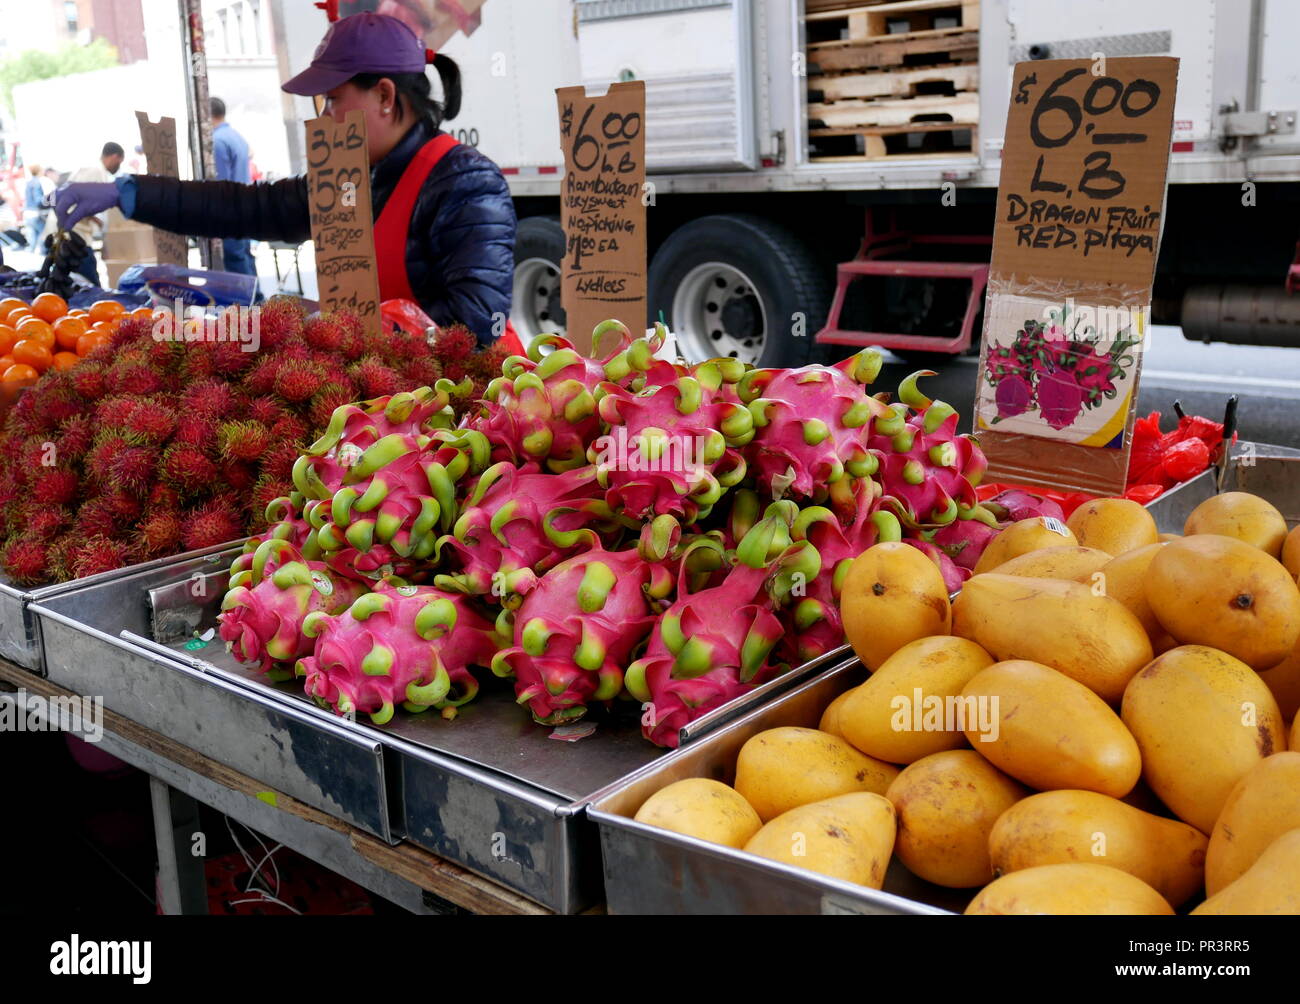 Dragon frutti e i litchi sul mercato della frutta in Chinatown, New York. Foto Stock